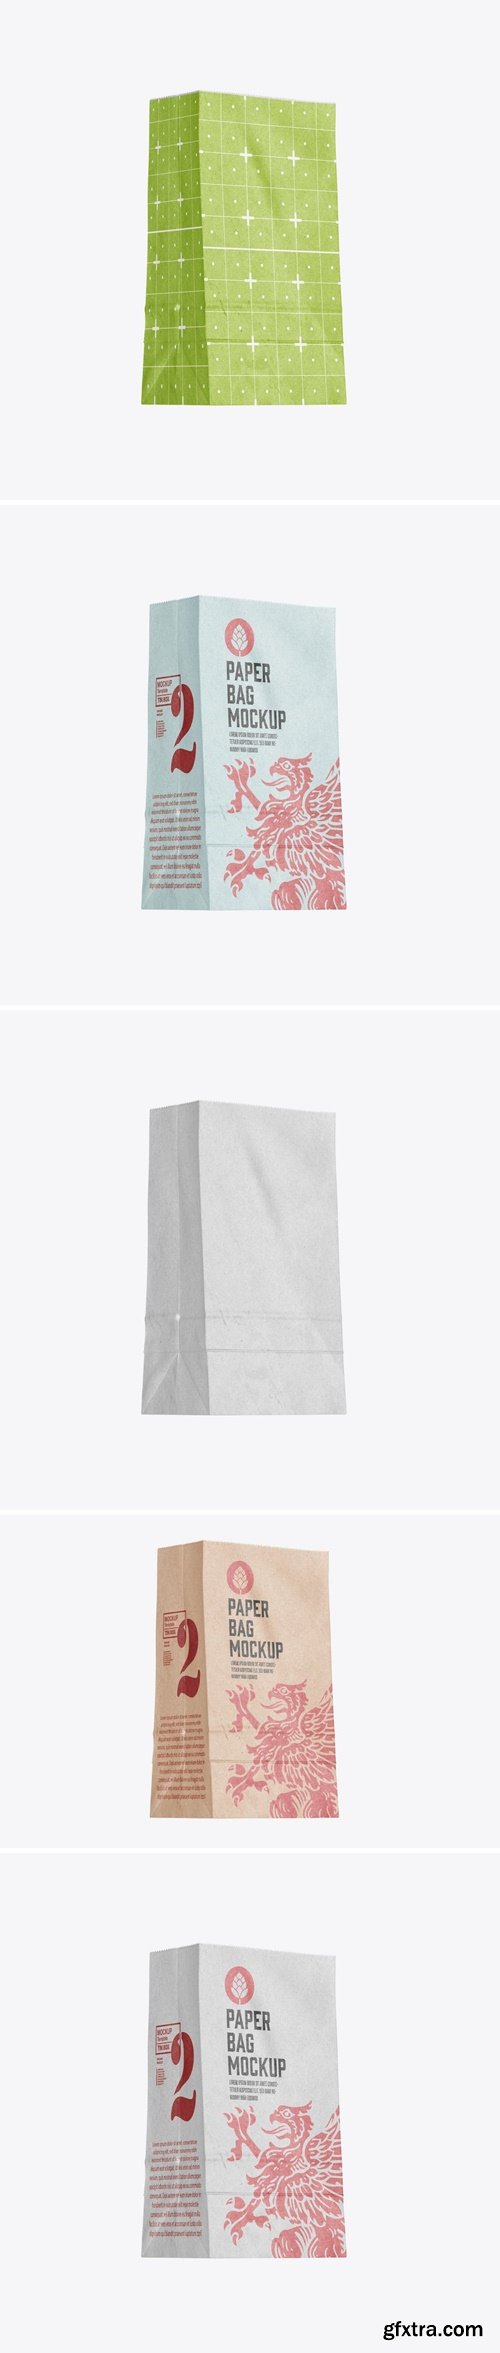 Paper Bag for Food Mockup 7V8NCYX